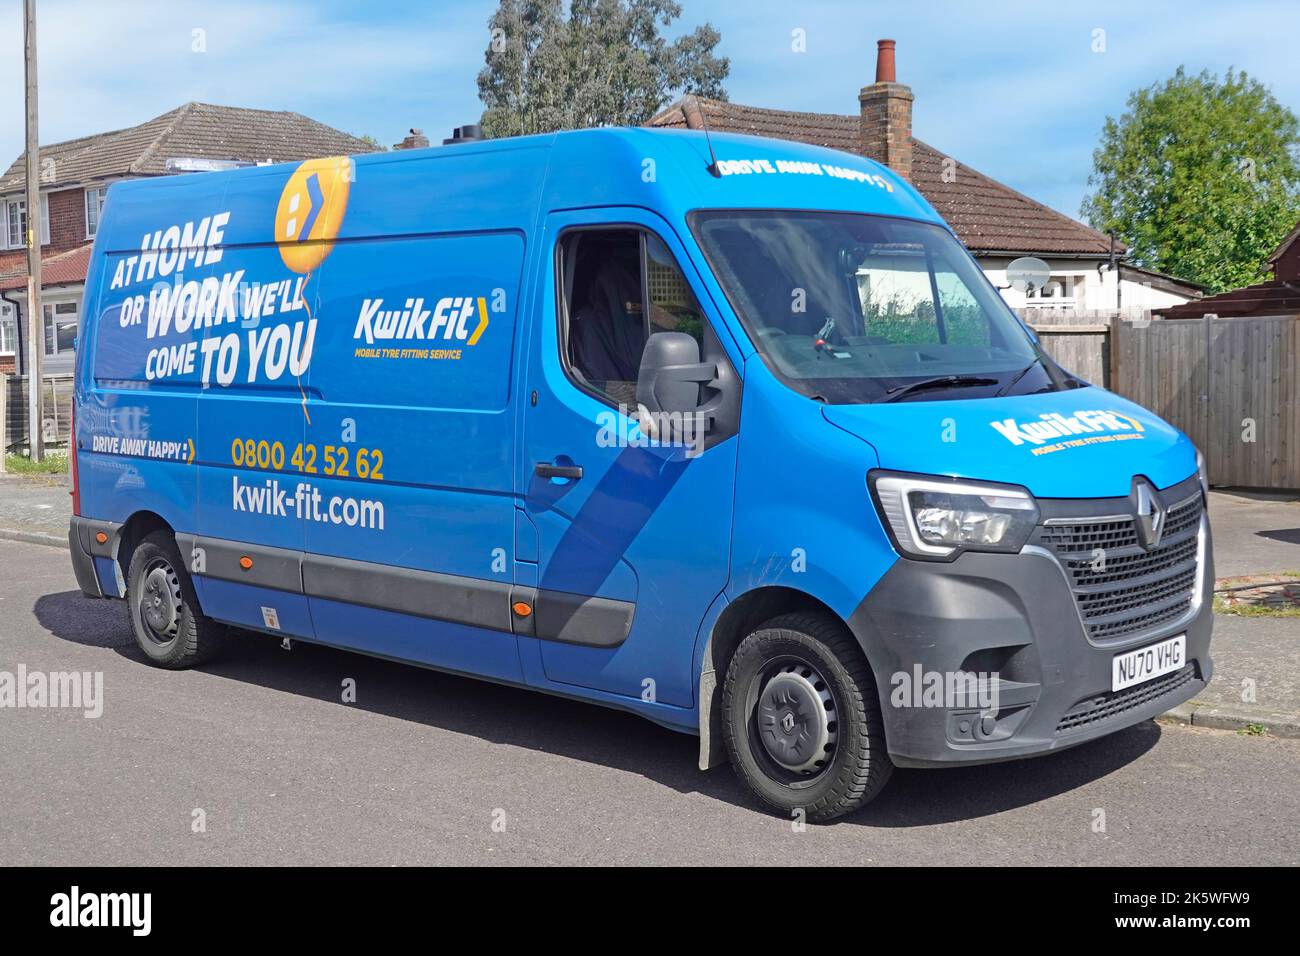 Kwick Fit Business Heim- oder Arbeitsreifen Montage Service Seite & Vorderansicht blau Renault Master van geparkt außerhalb Wohnimmobilie Essex England UK Stockfoto